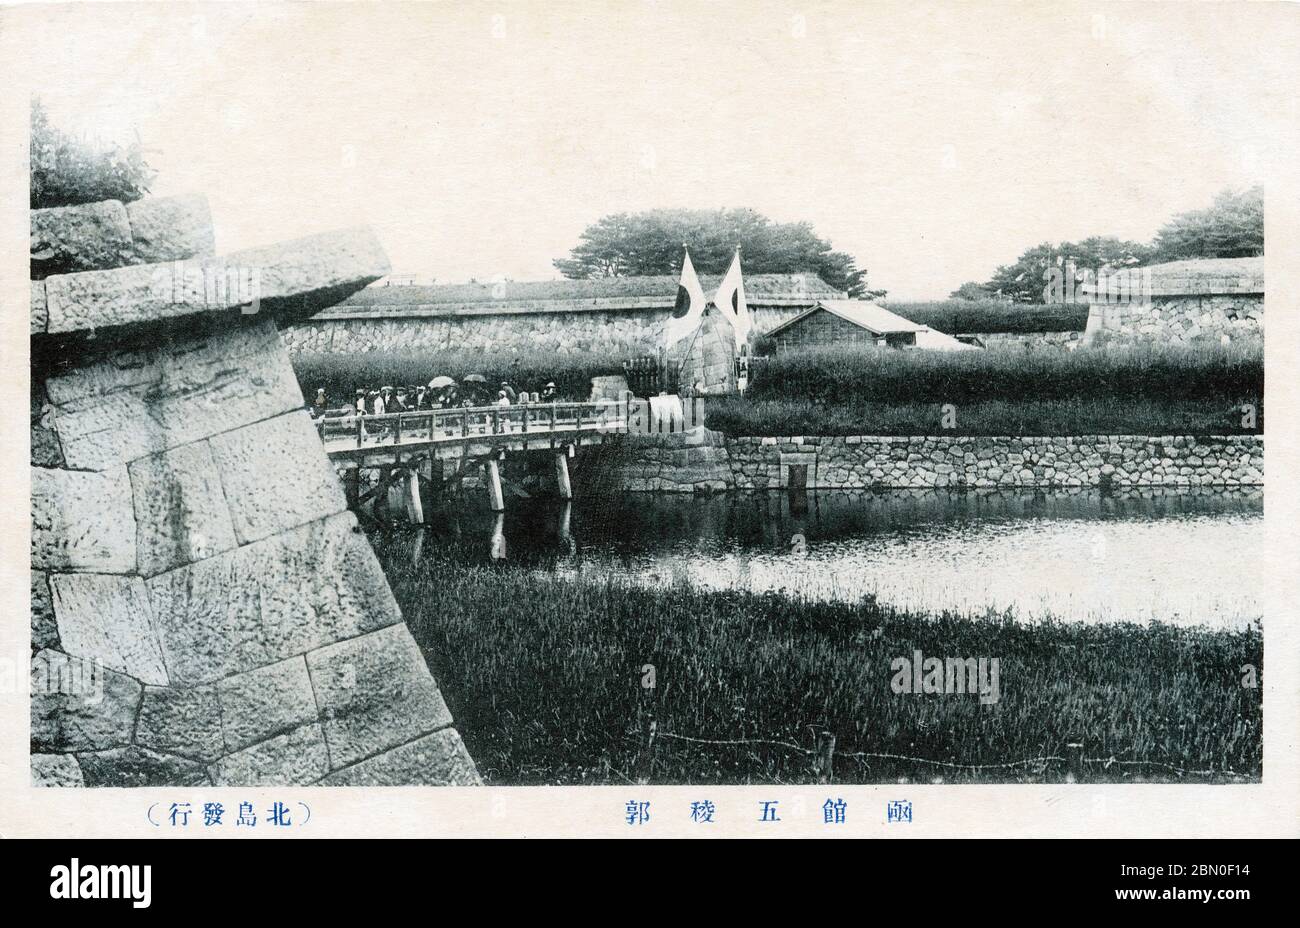 [ années 1920 Japon - fort Hakodate Goryokaku ] — visiteurs au fort Goryokaku (五稜郭) à Hakodate (函館), Hokkaido, ca. années 1920. Conçu en 1855 (Ansei 2), le fort à cinq étoiles a été construit par le shogunat Tokugawa pour protéger le détroit de Tsugaru contre une éventuelle invasion par la flotte russe. La dernière bataille de la guerre de Boshin (戊辰戦争, 1868–1869) a été menée ici en juin 1869 (Meiji 2) carte postale du XXe siècle. Banque D'Images